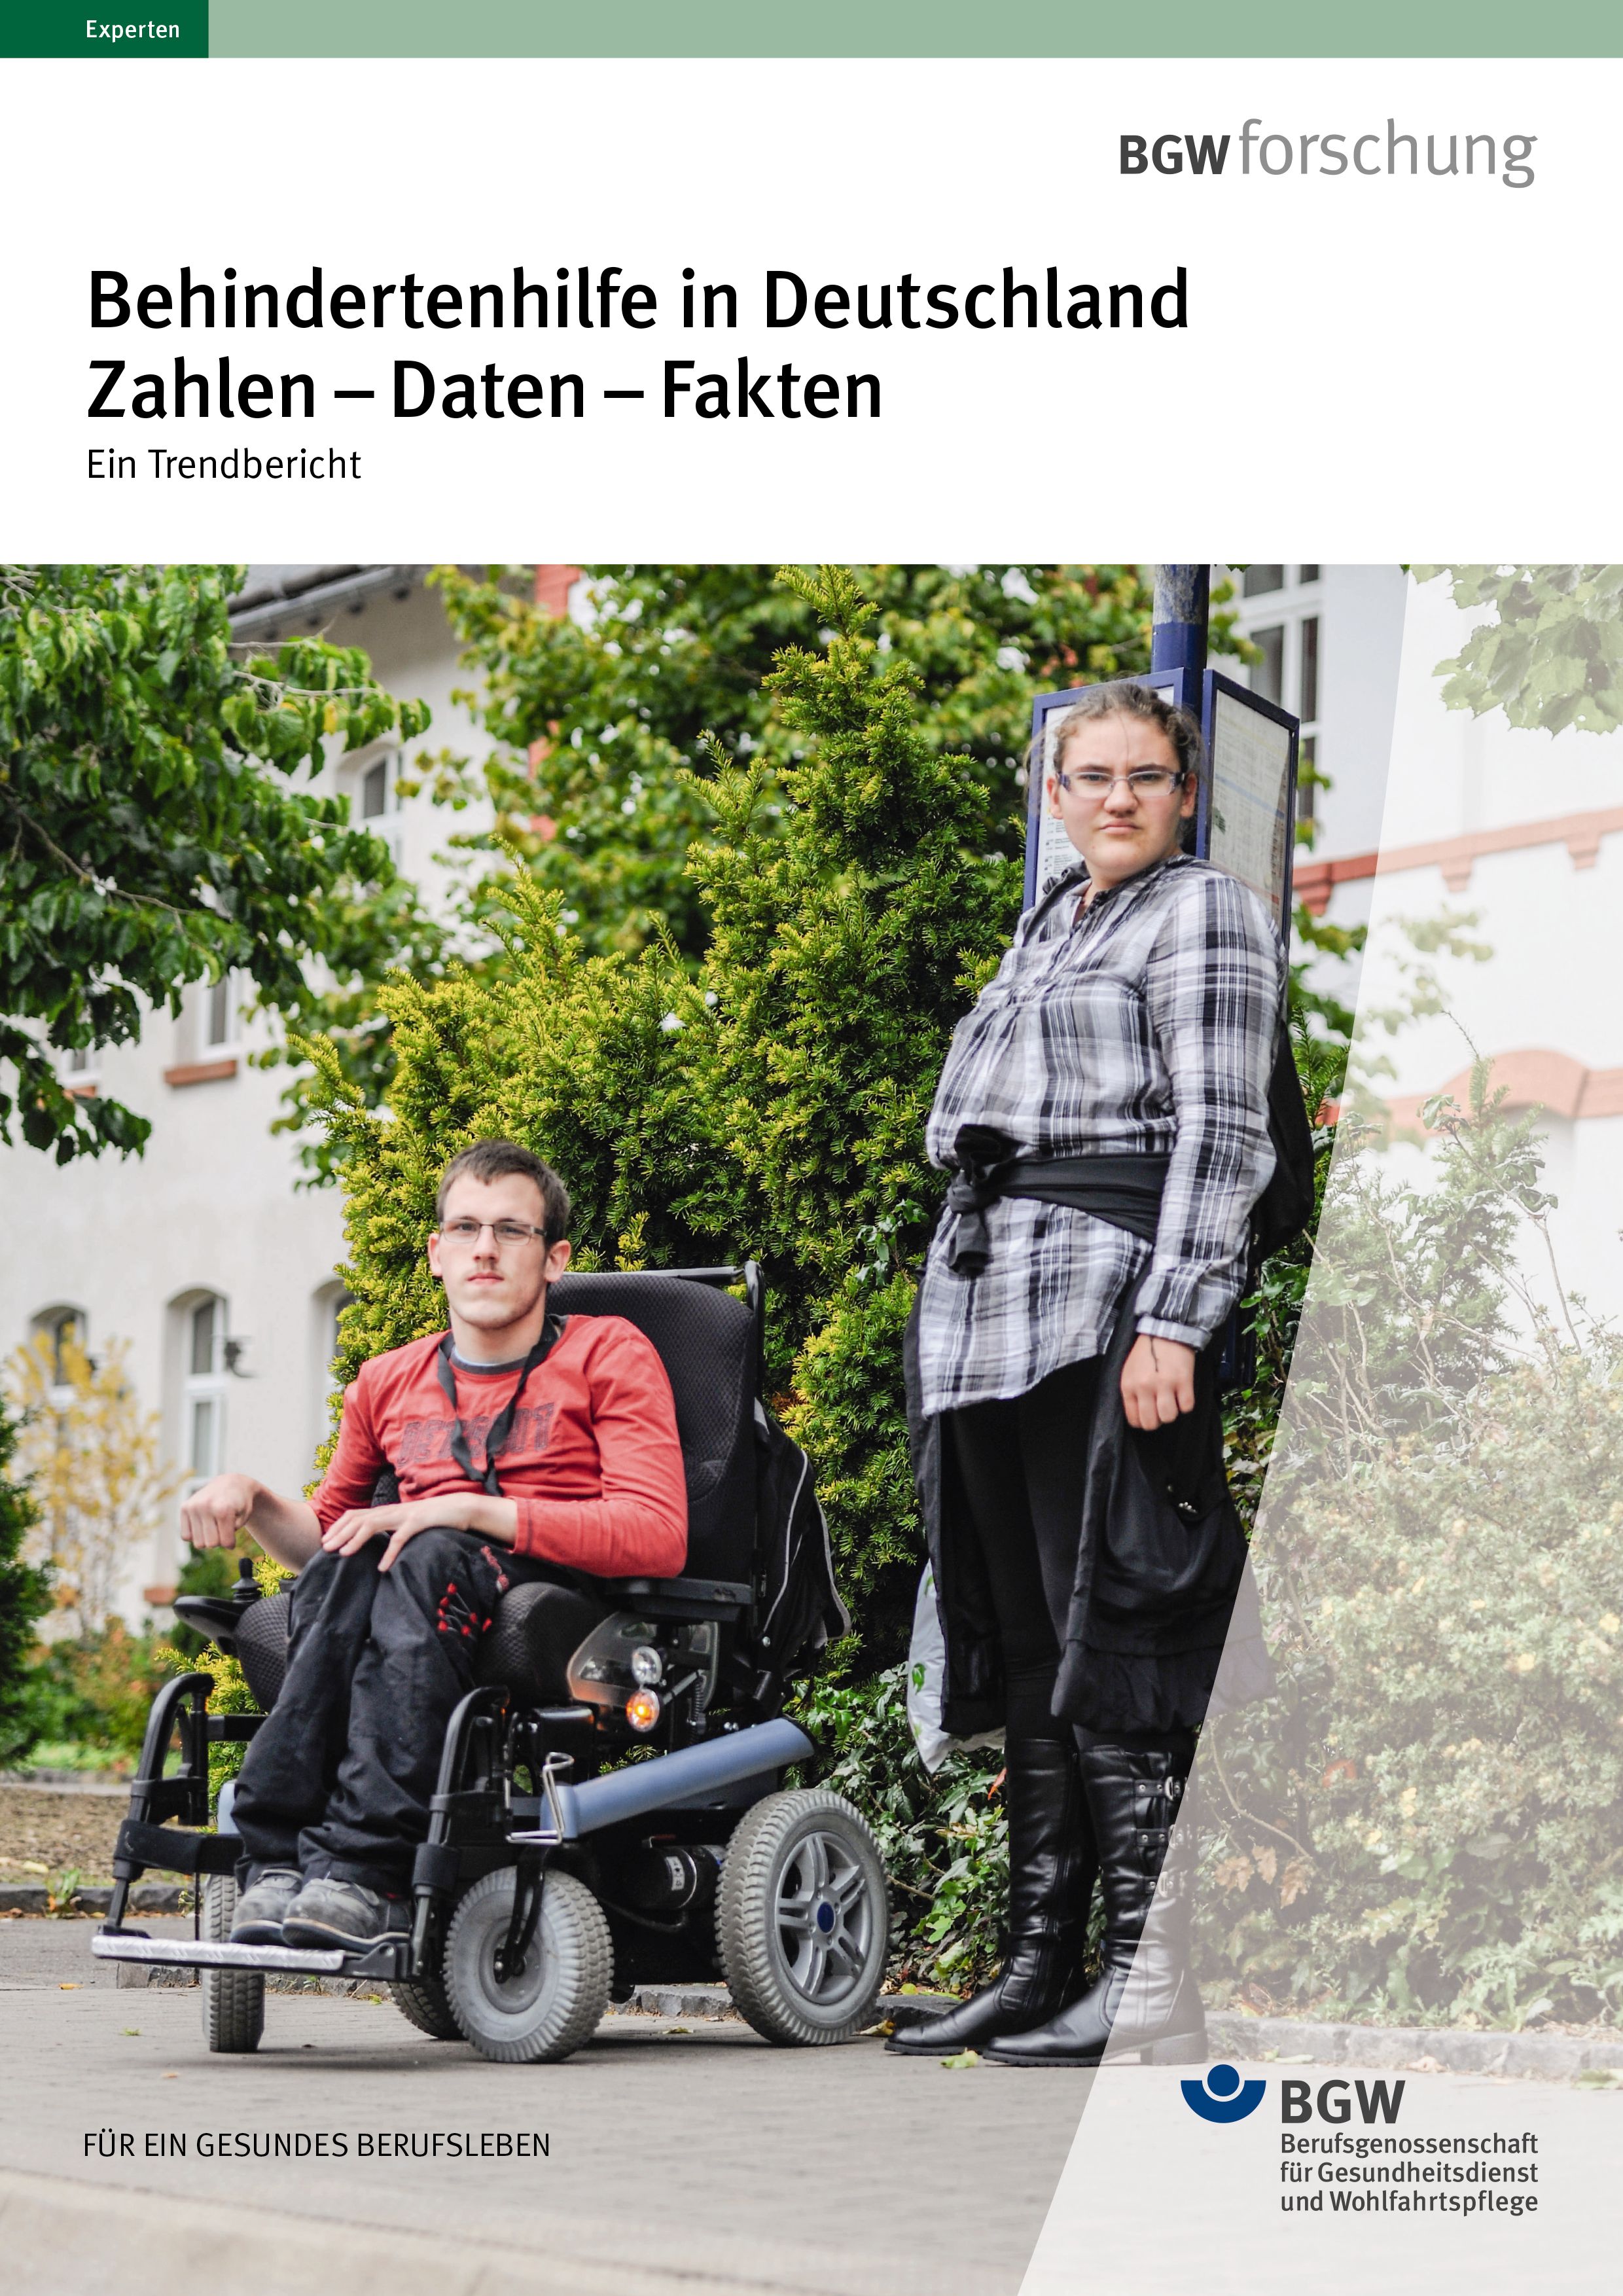 Titel: Behindertenhilfe in Deutschland Zahlen-Daten-Fakten – Zwei Personen mit Behinderung warten an einer Bushaltestelle